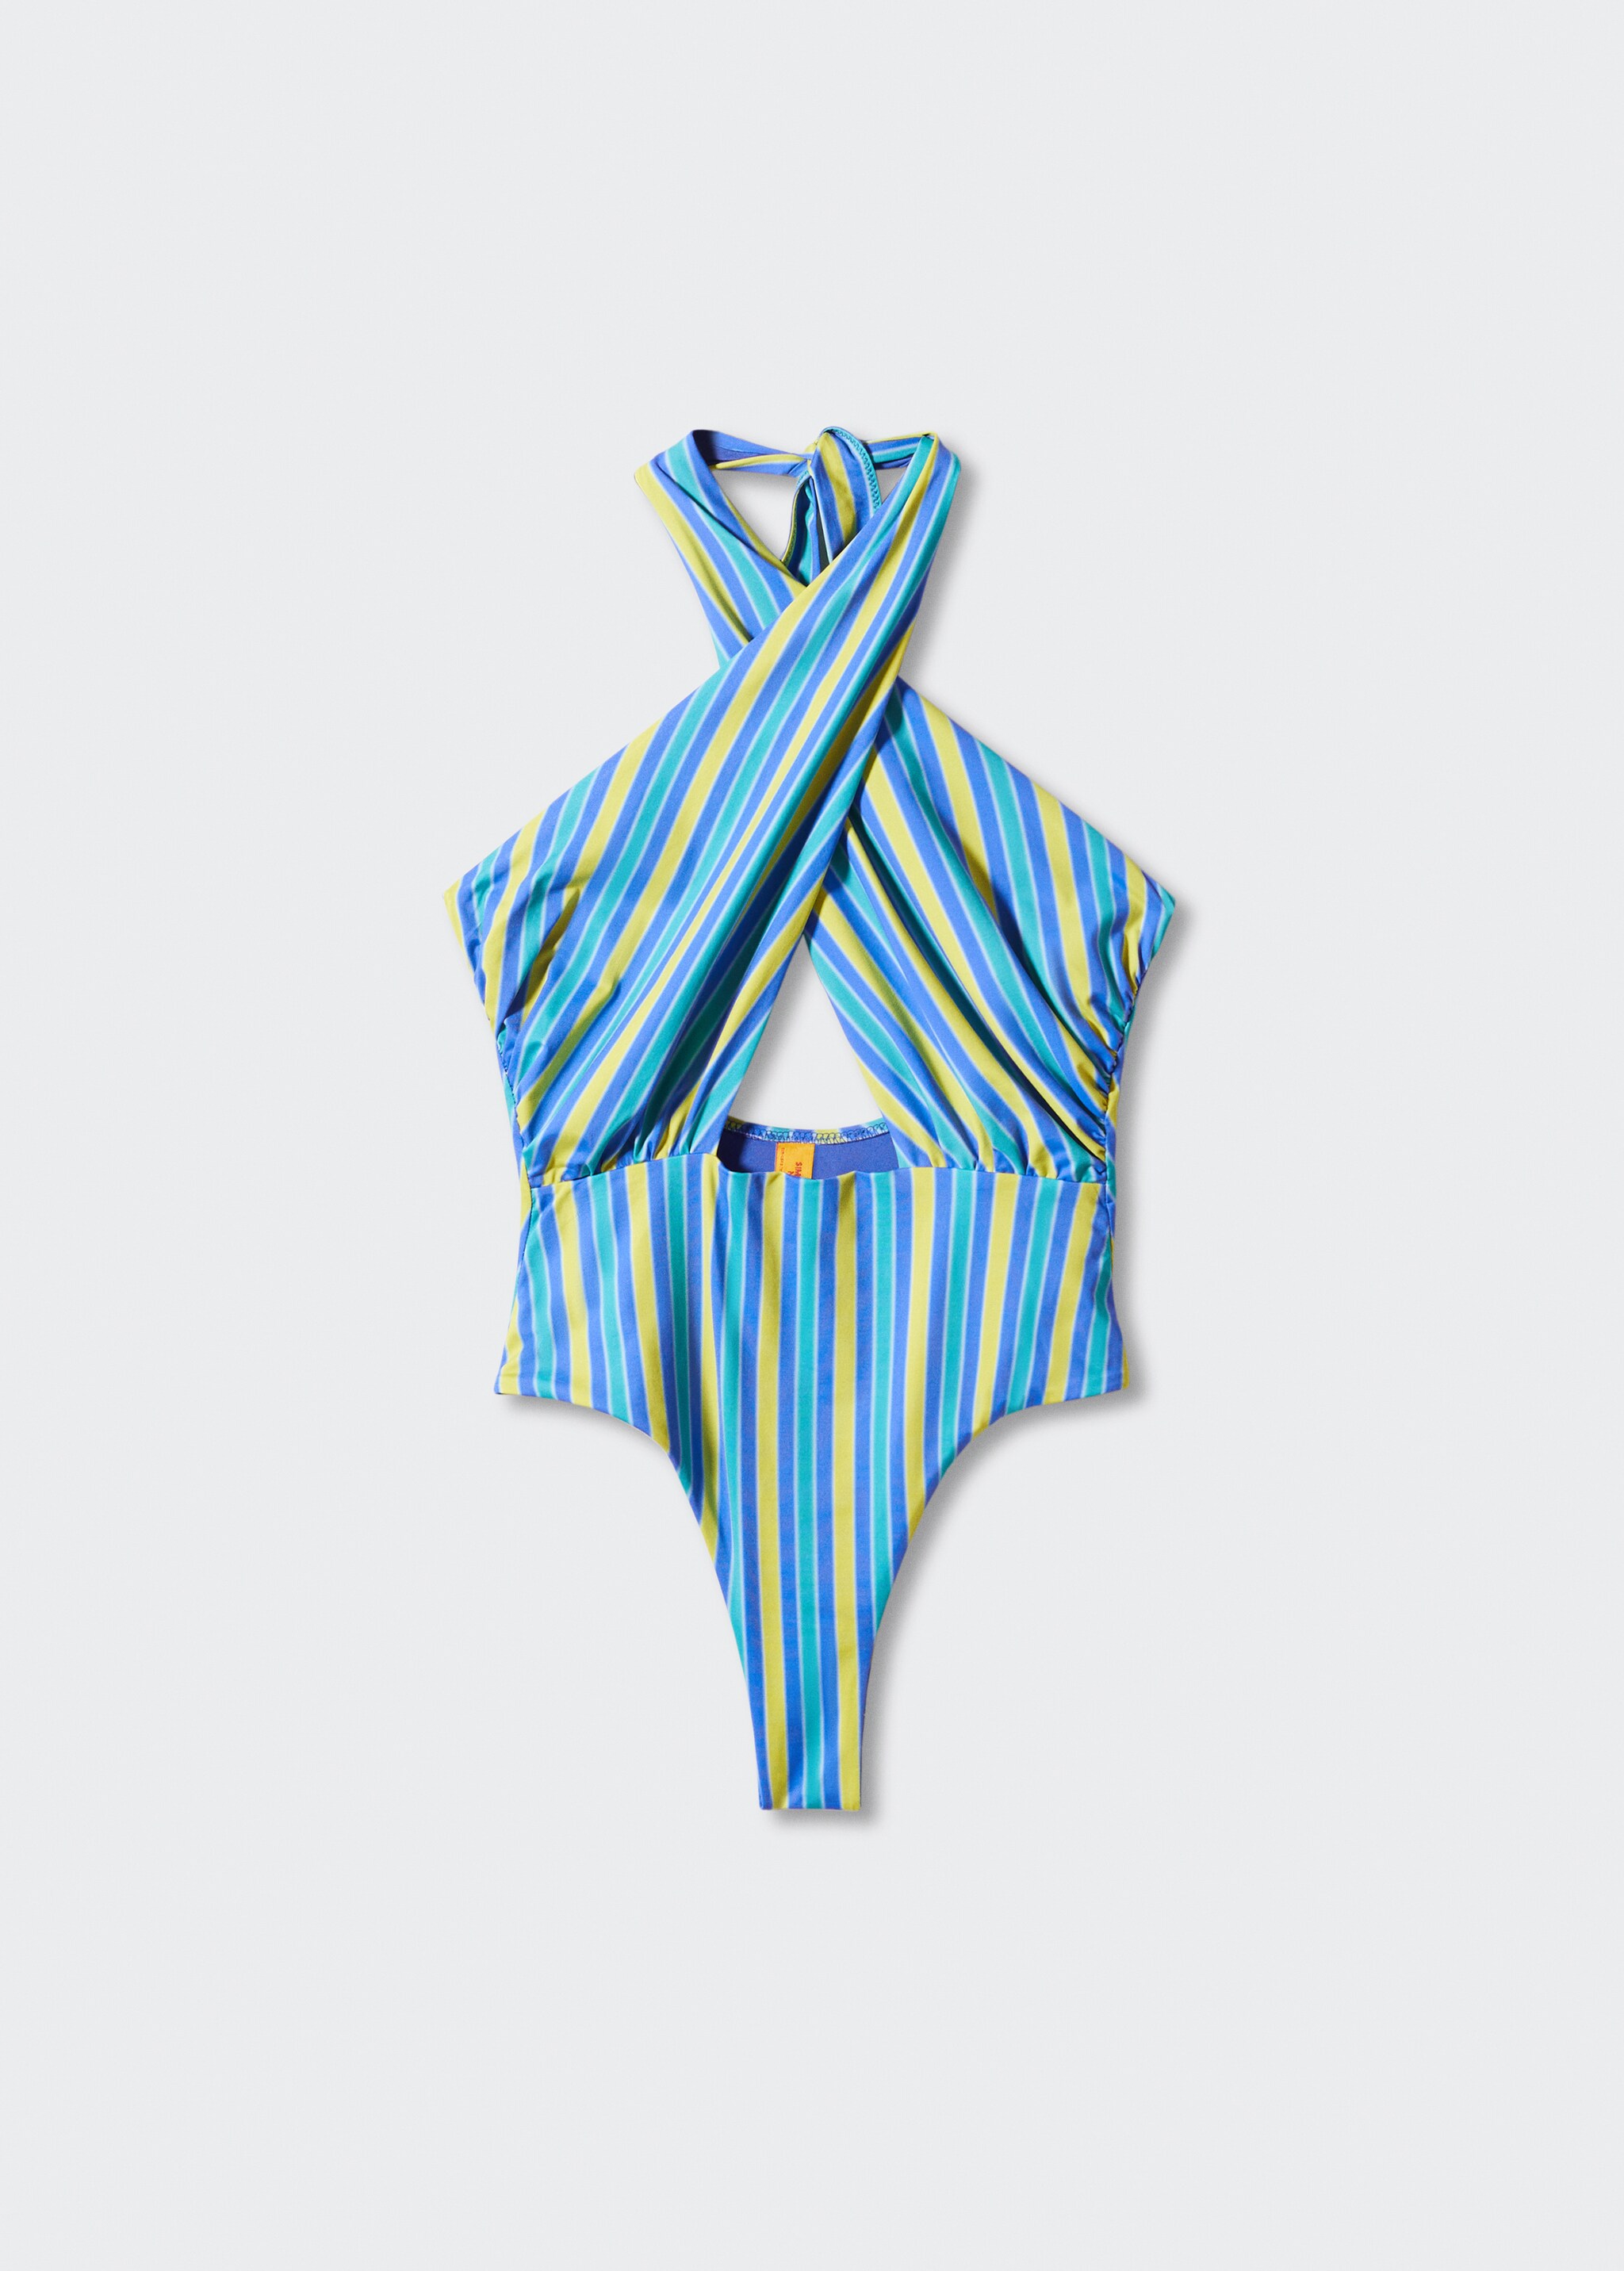 Überkreuzter Badeanzug mit mehrfarbigen Streifen - Artikel ohne Model